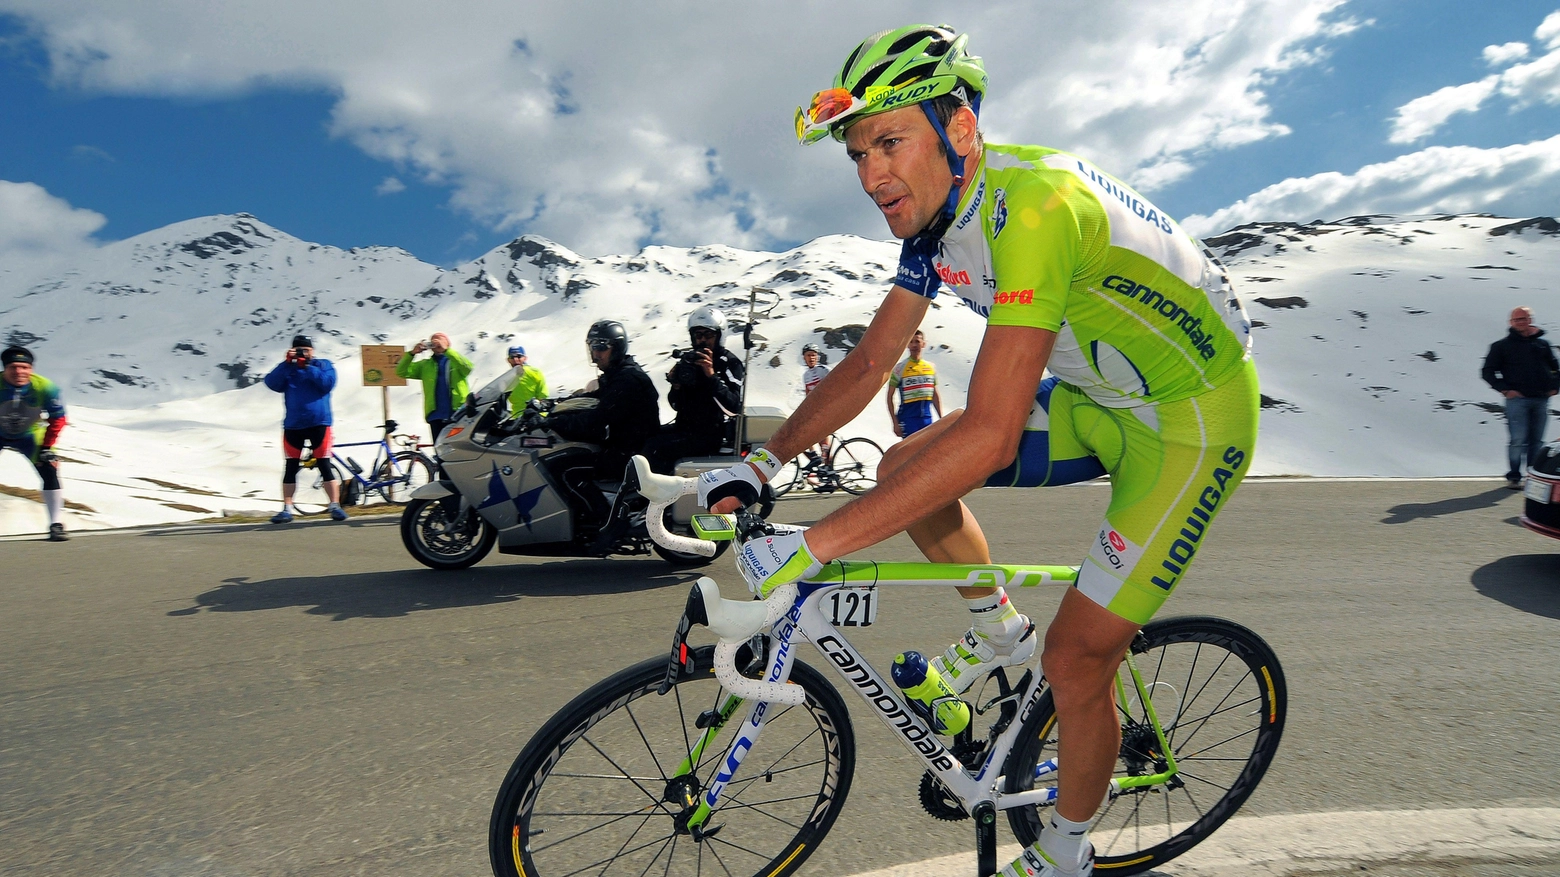 La seconda vita da team manager del campione di ciclismo Ivan Basso: "Scarponi e Rebellin, le loro morti siano una svolta. Nello sport come sul fronte sicurezza, più fatti e meno lamentele. Sulla strada o dietro la scrivania, i risultati decidono se ci sai fare"